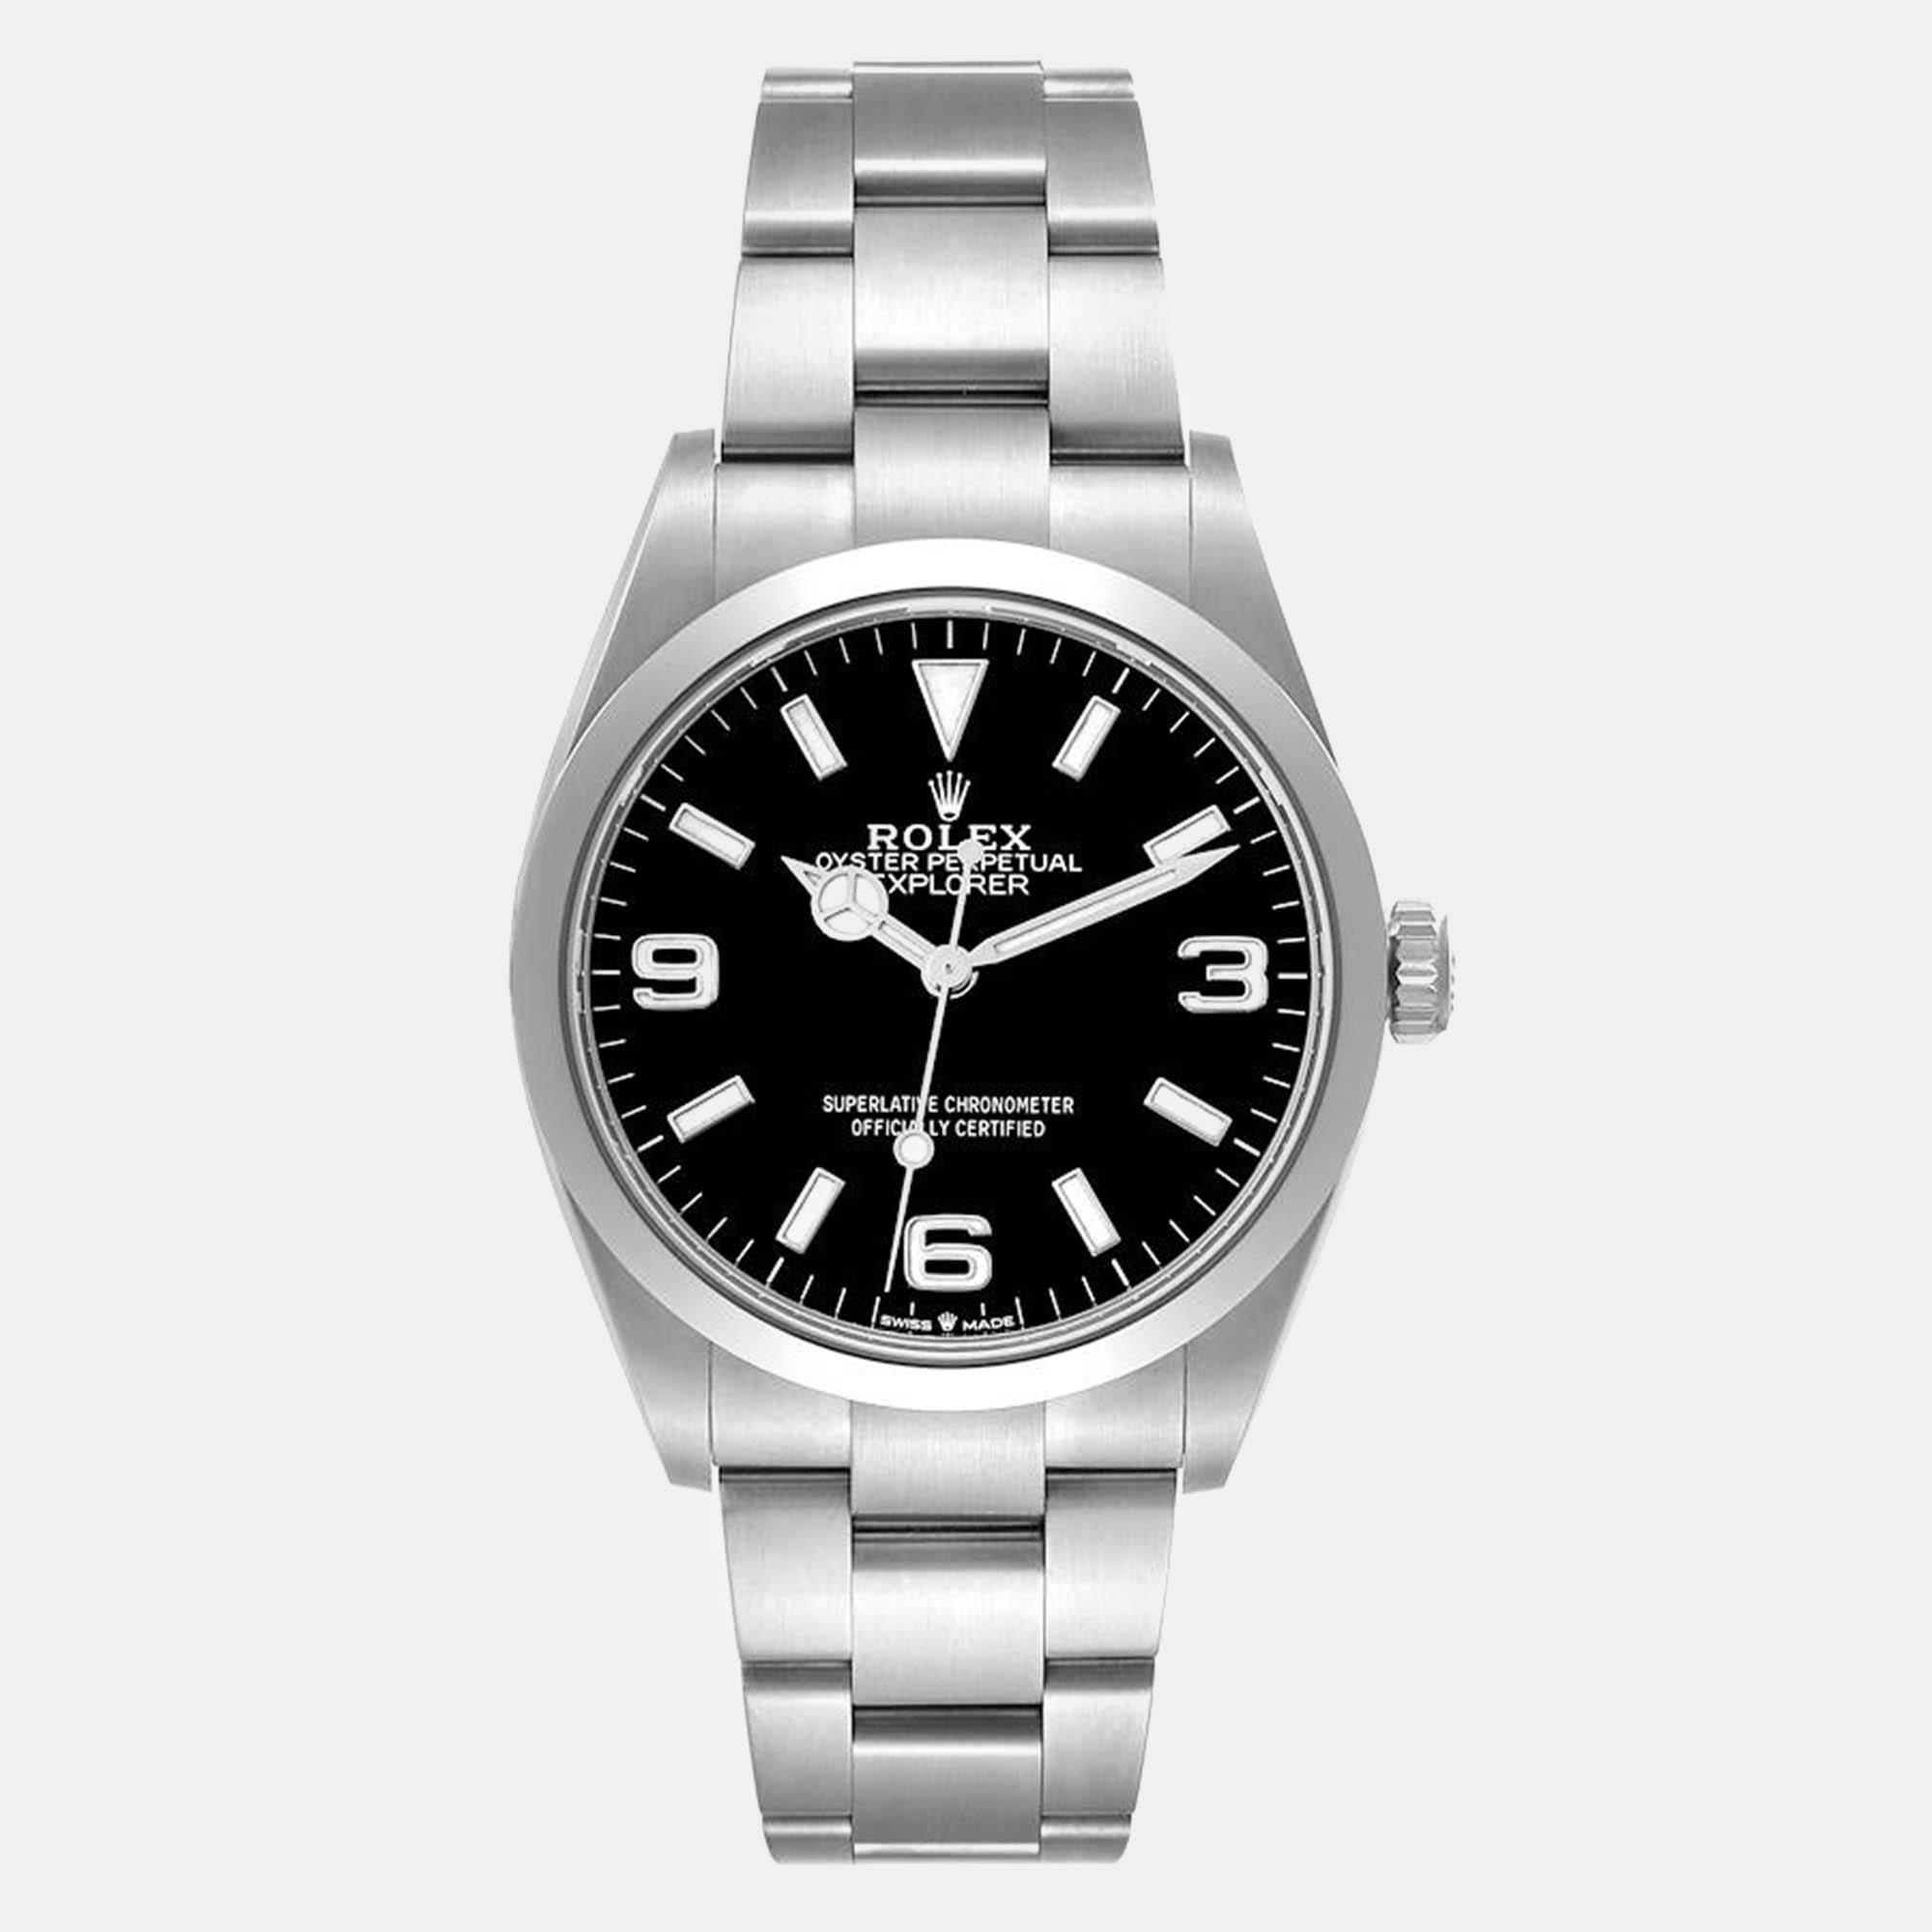 Rolex explorer i black dial steel men's watch 36 mm